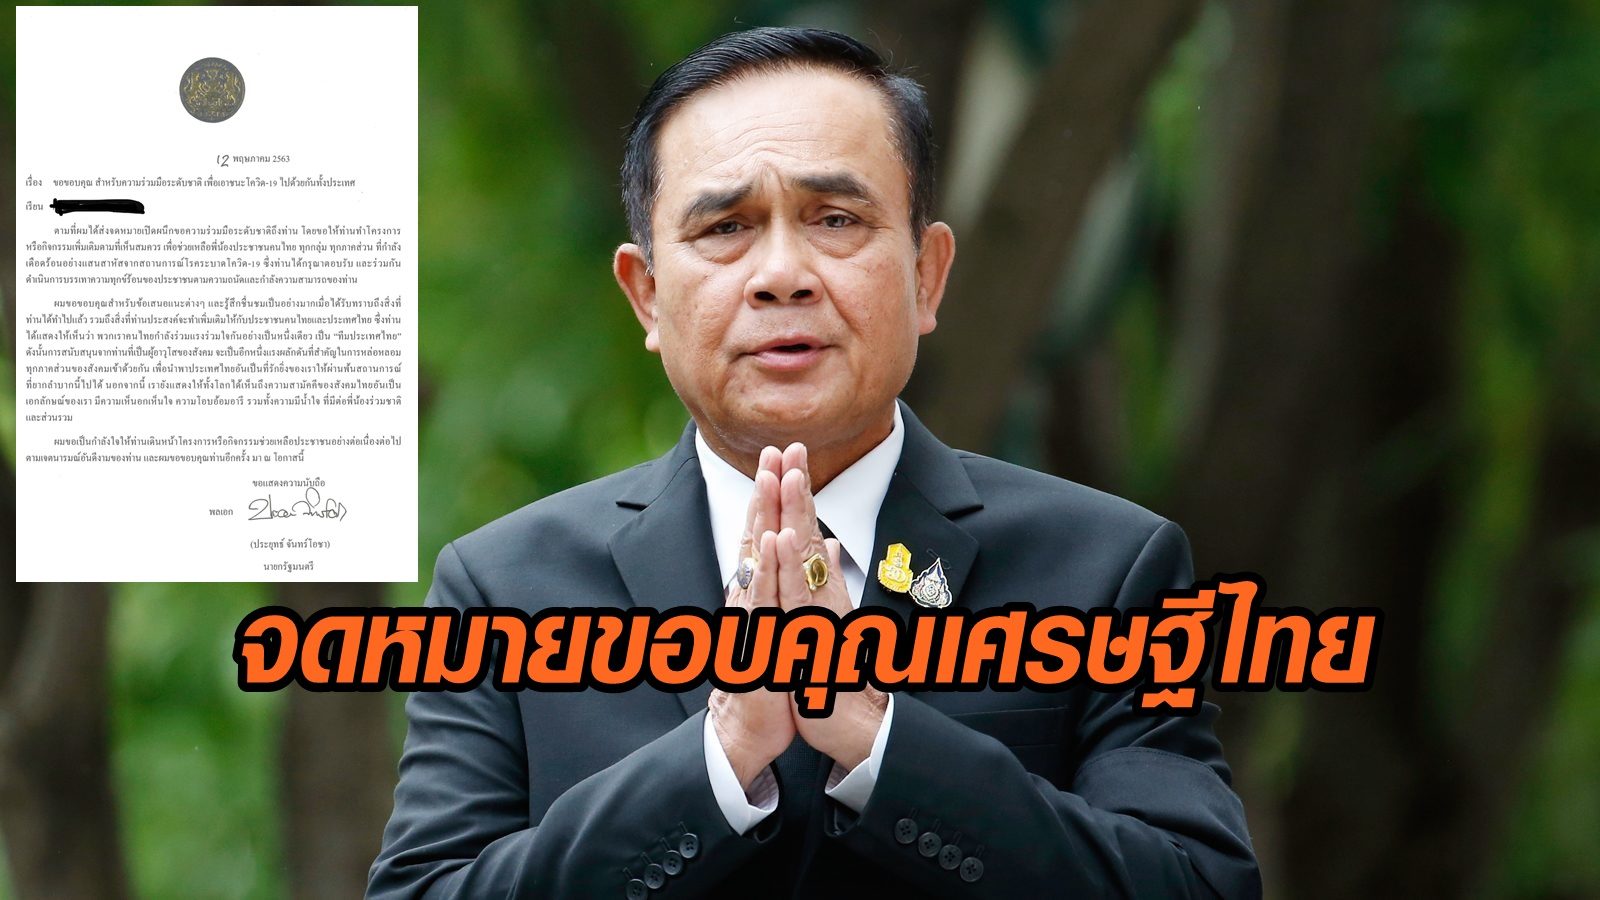 เผยจดหมาย "บิ๊กตู่" ขอบคุณ มหาเศรษฐีไทย ช่วยเหลือประชาชนที่เดือดร้อนจาก โควิด-19